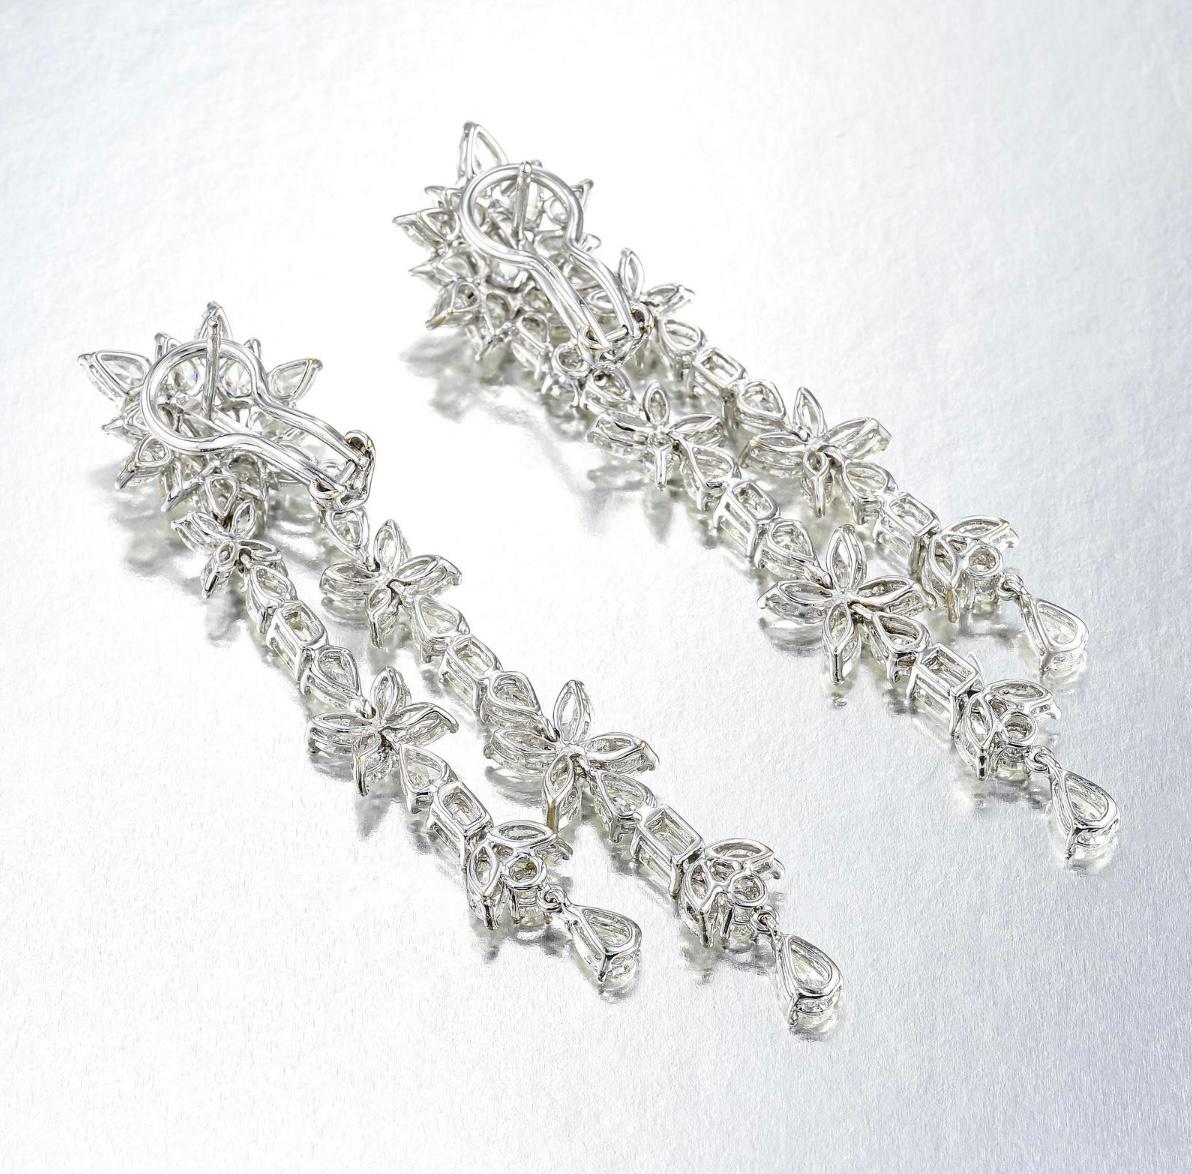 Contemporary 18.92 Carat White Fancy Cut Diamond Chandelier Earrings In 18K White Gold.  For Sale